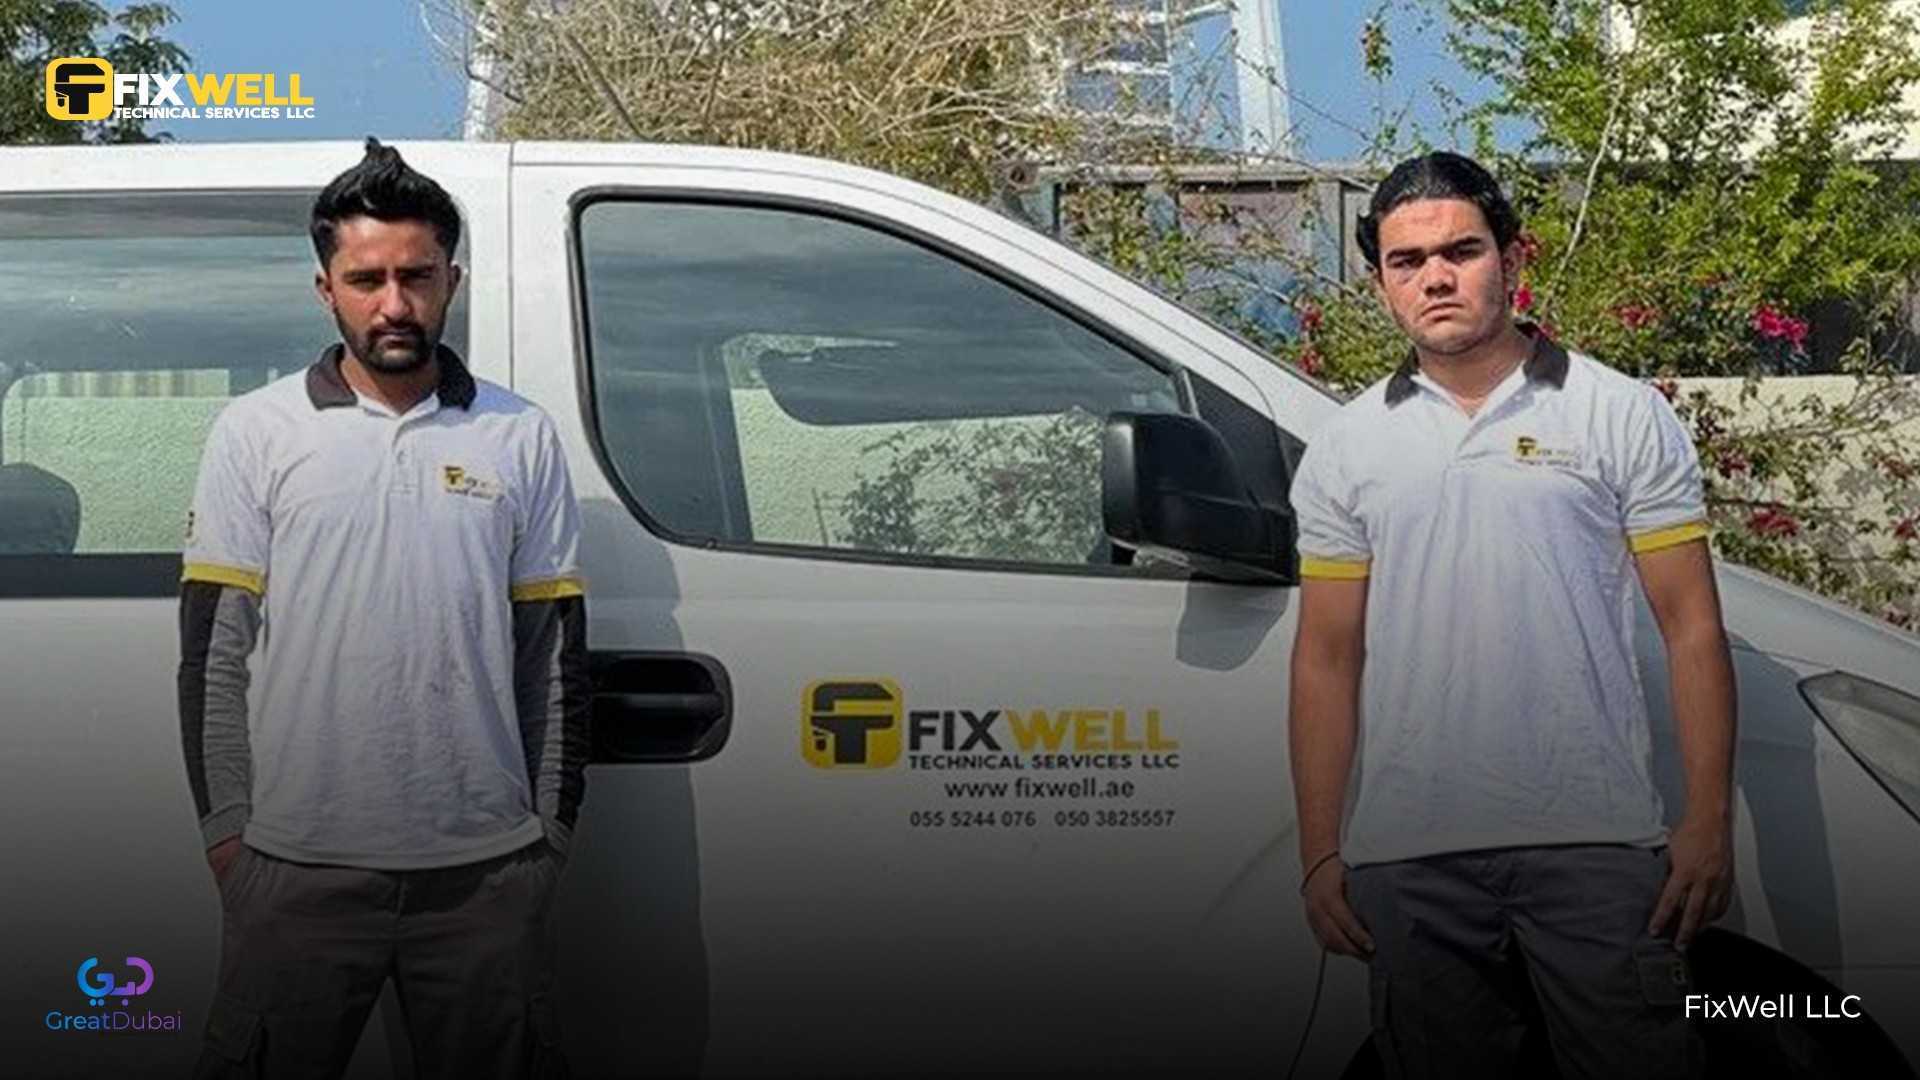 FixWell LLC